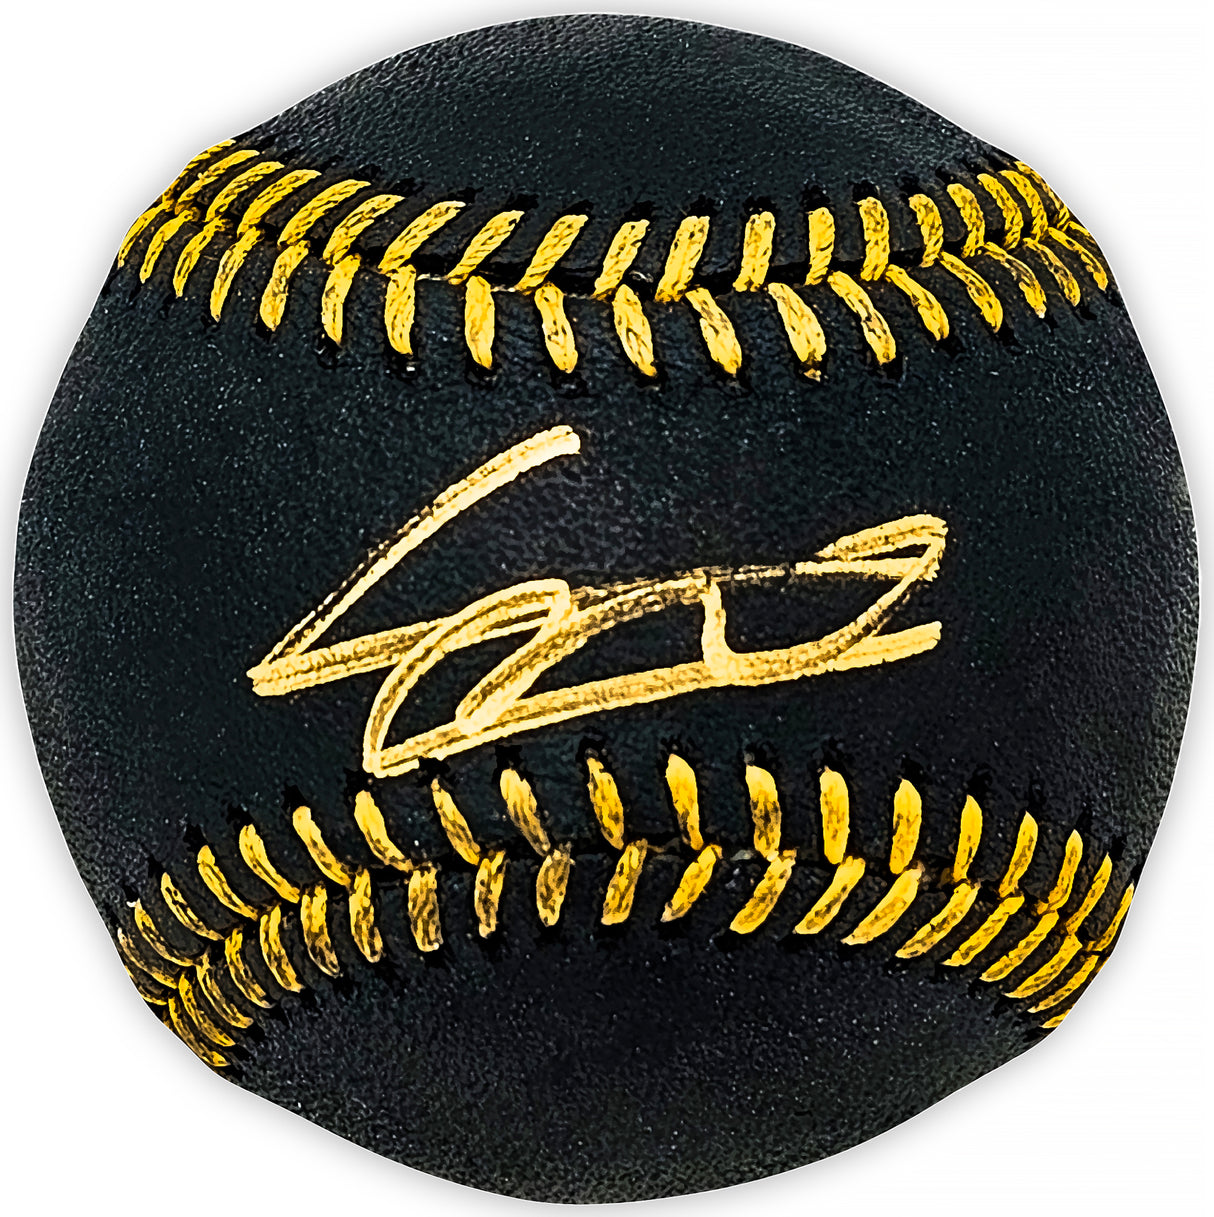 Vladimir Guerrero Jr. Autographed Official Black MLB Baseball Toronto Blue Jays JSA Stock #215525